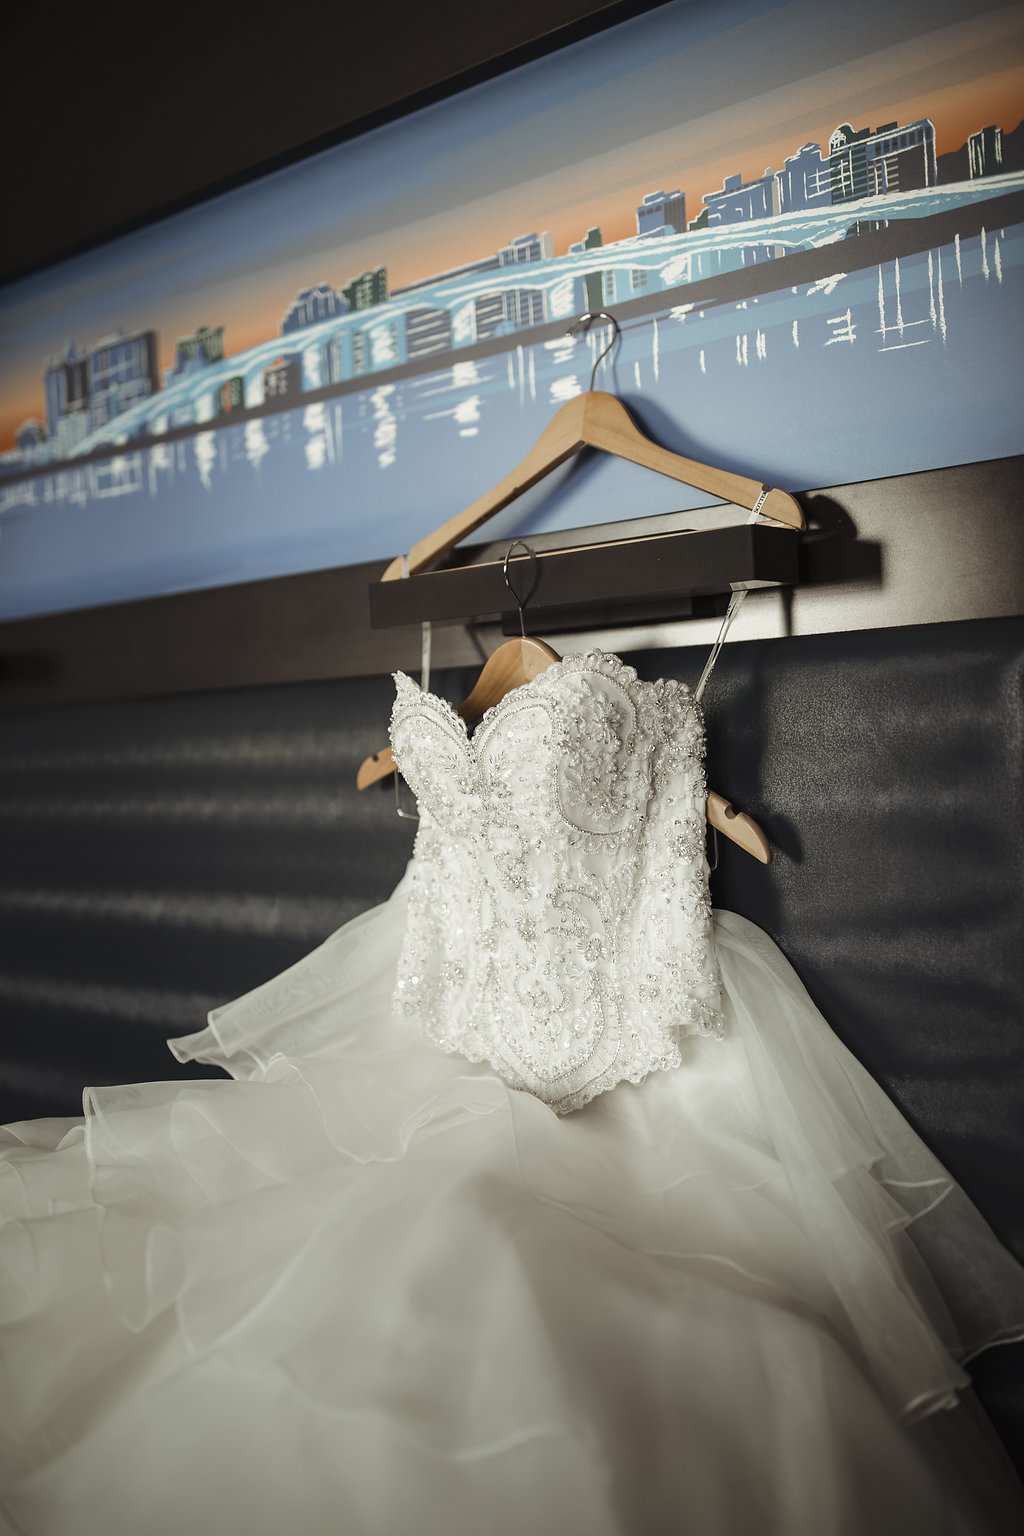 Strapless Ballgown wedding Dress on Hanger